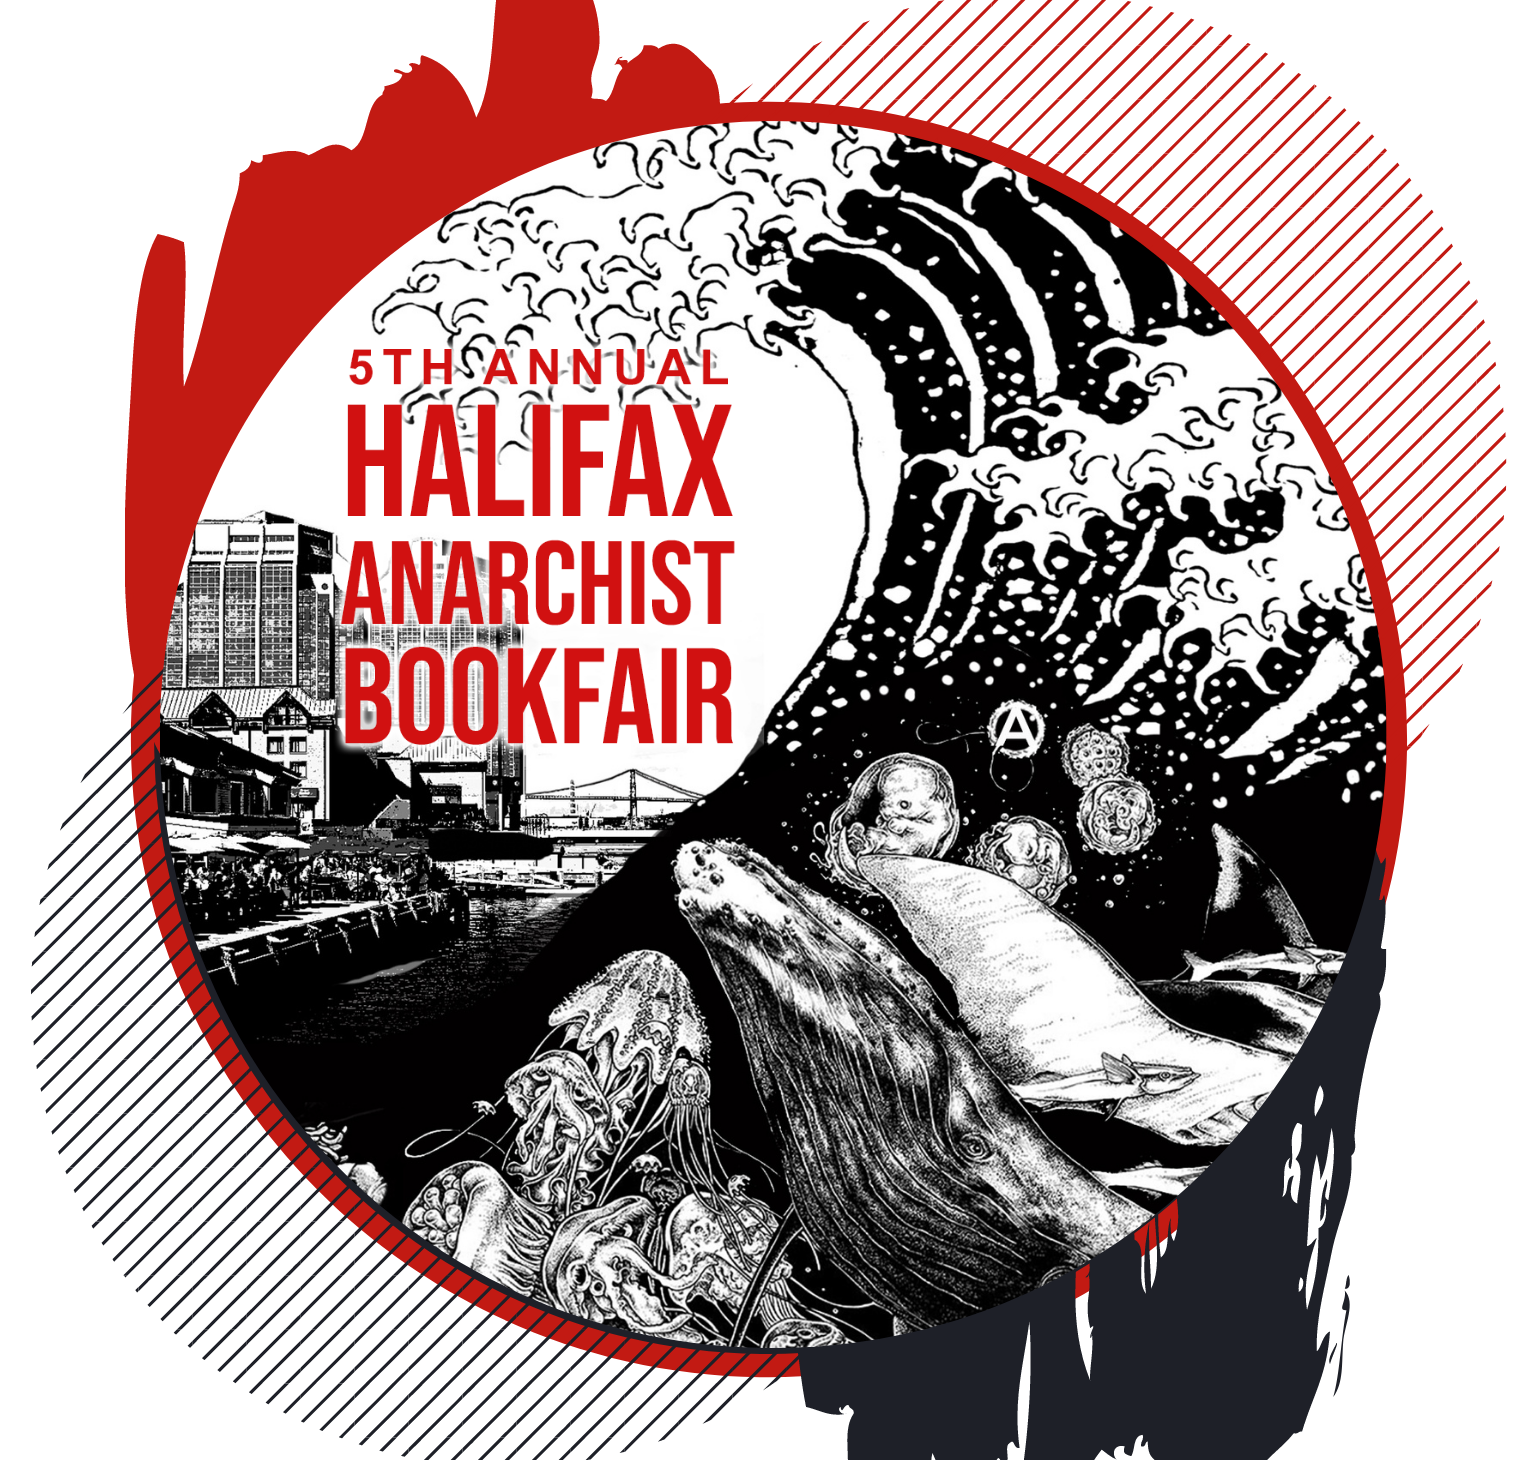 5th Annual Halifax Anarchist Bookfair